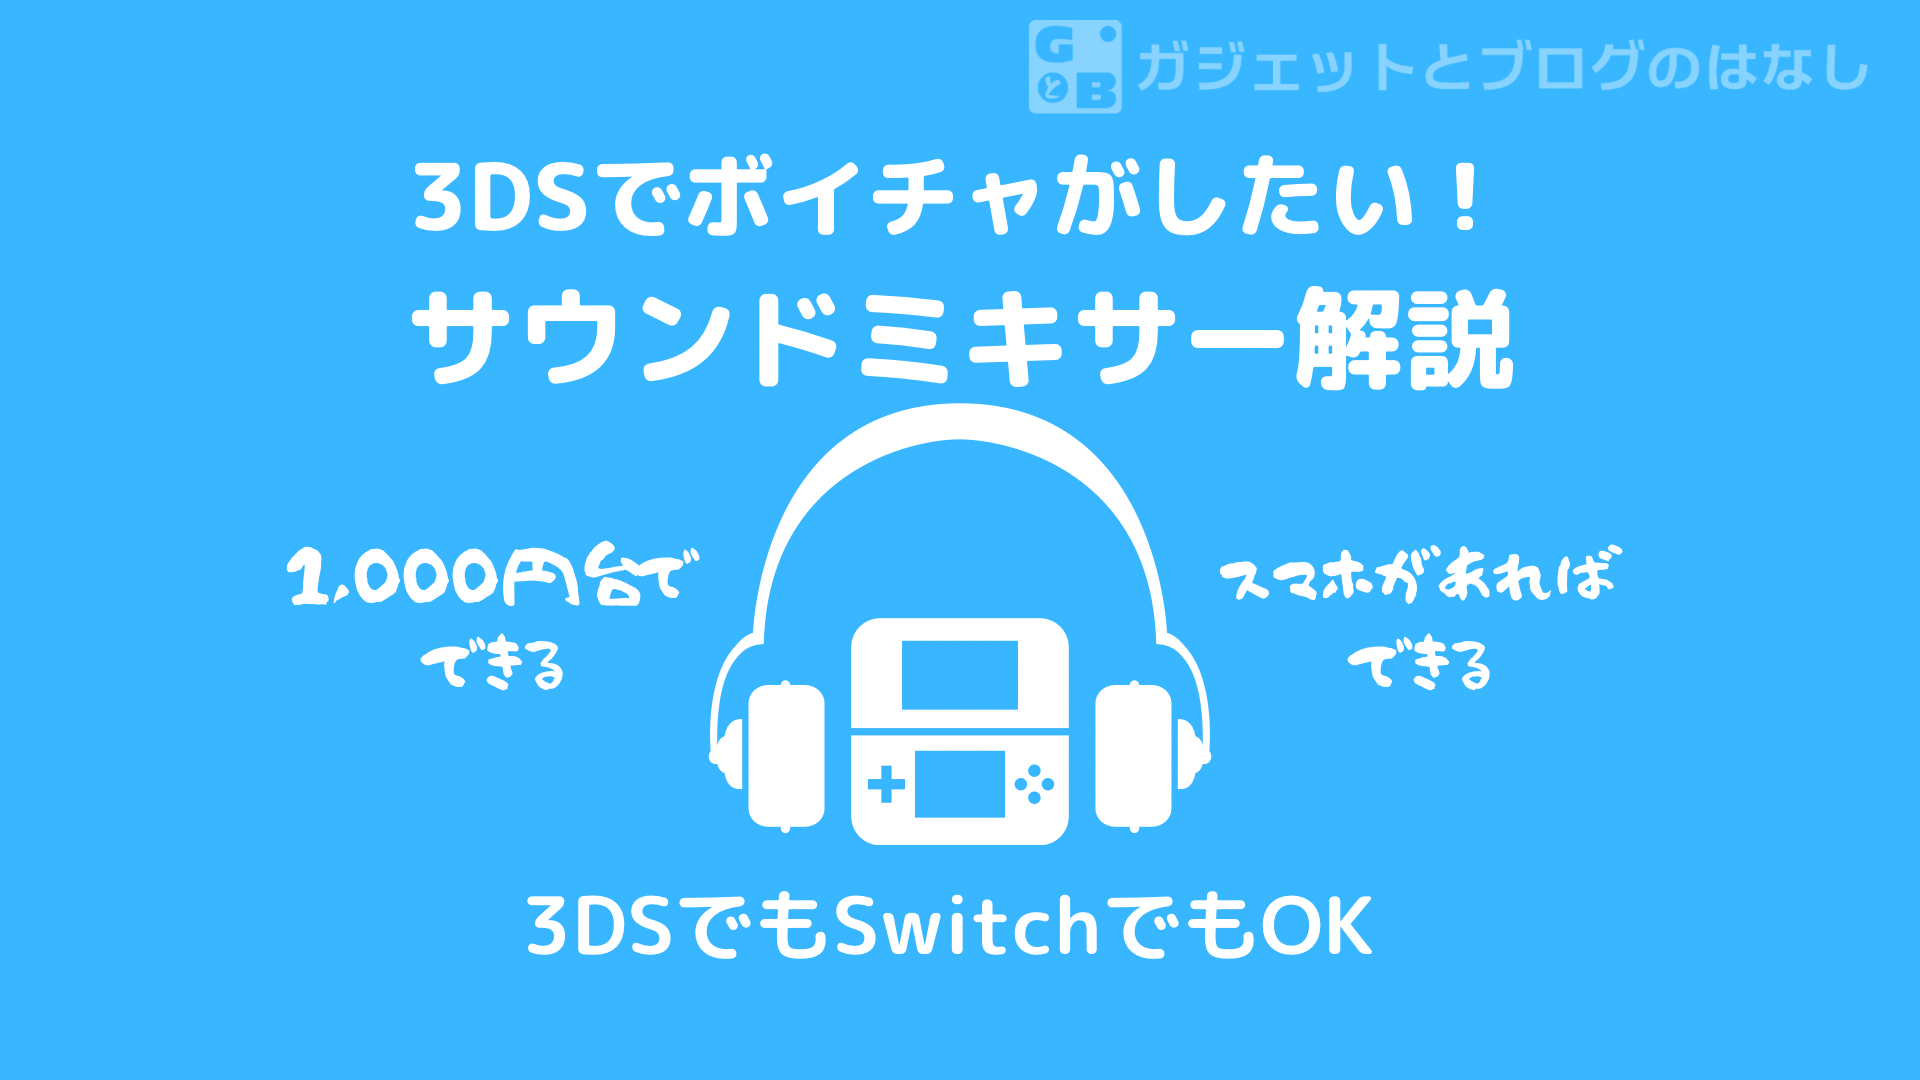 22年版 3ds Nintendo Switchでボイスチャットをする方法 ガジェットとブログのはなし